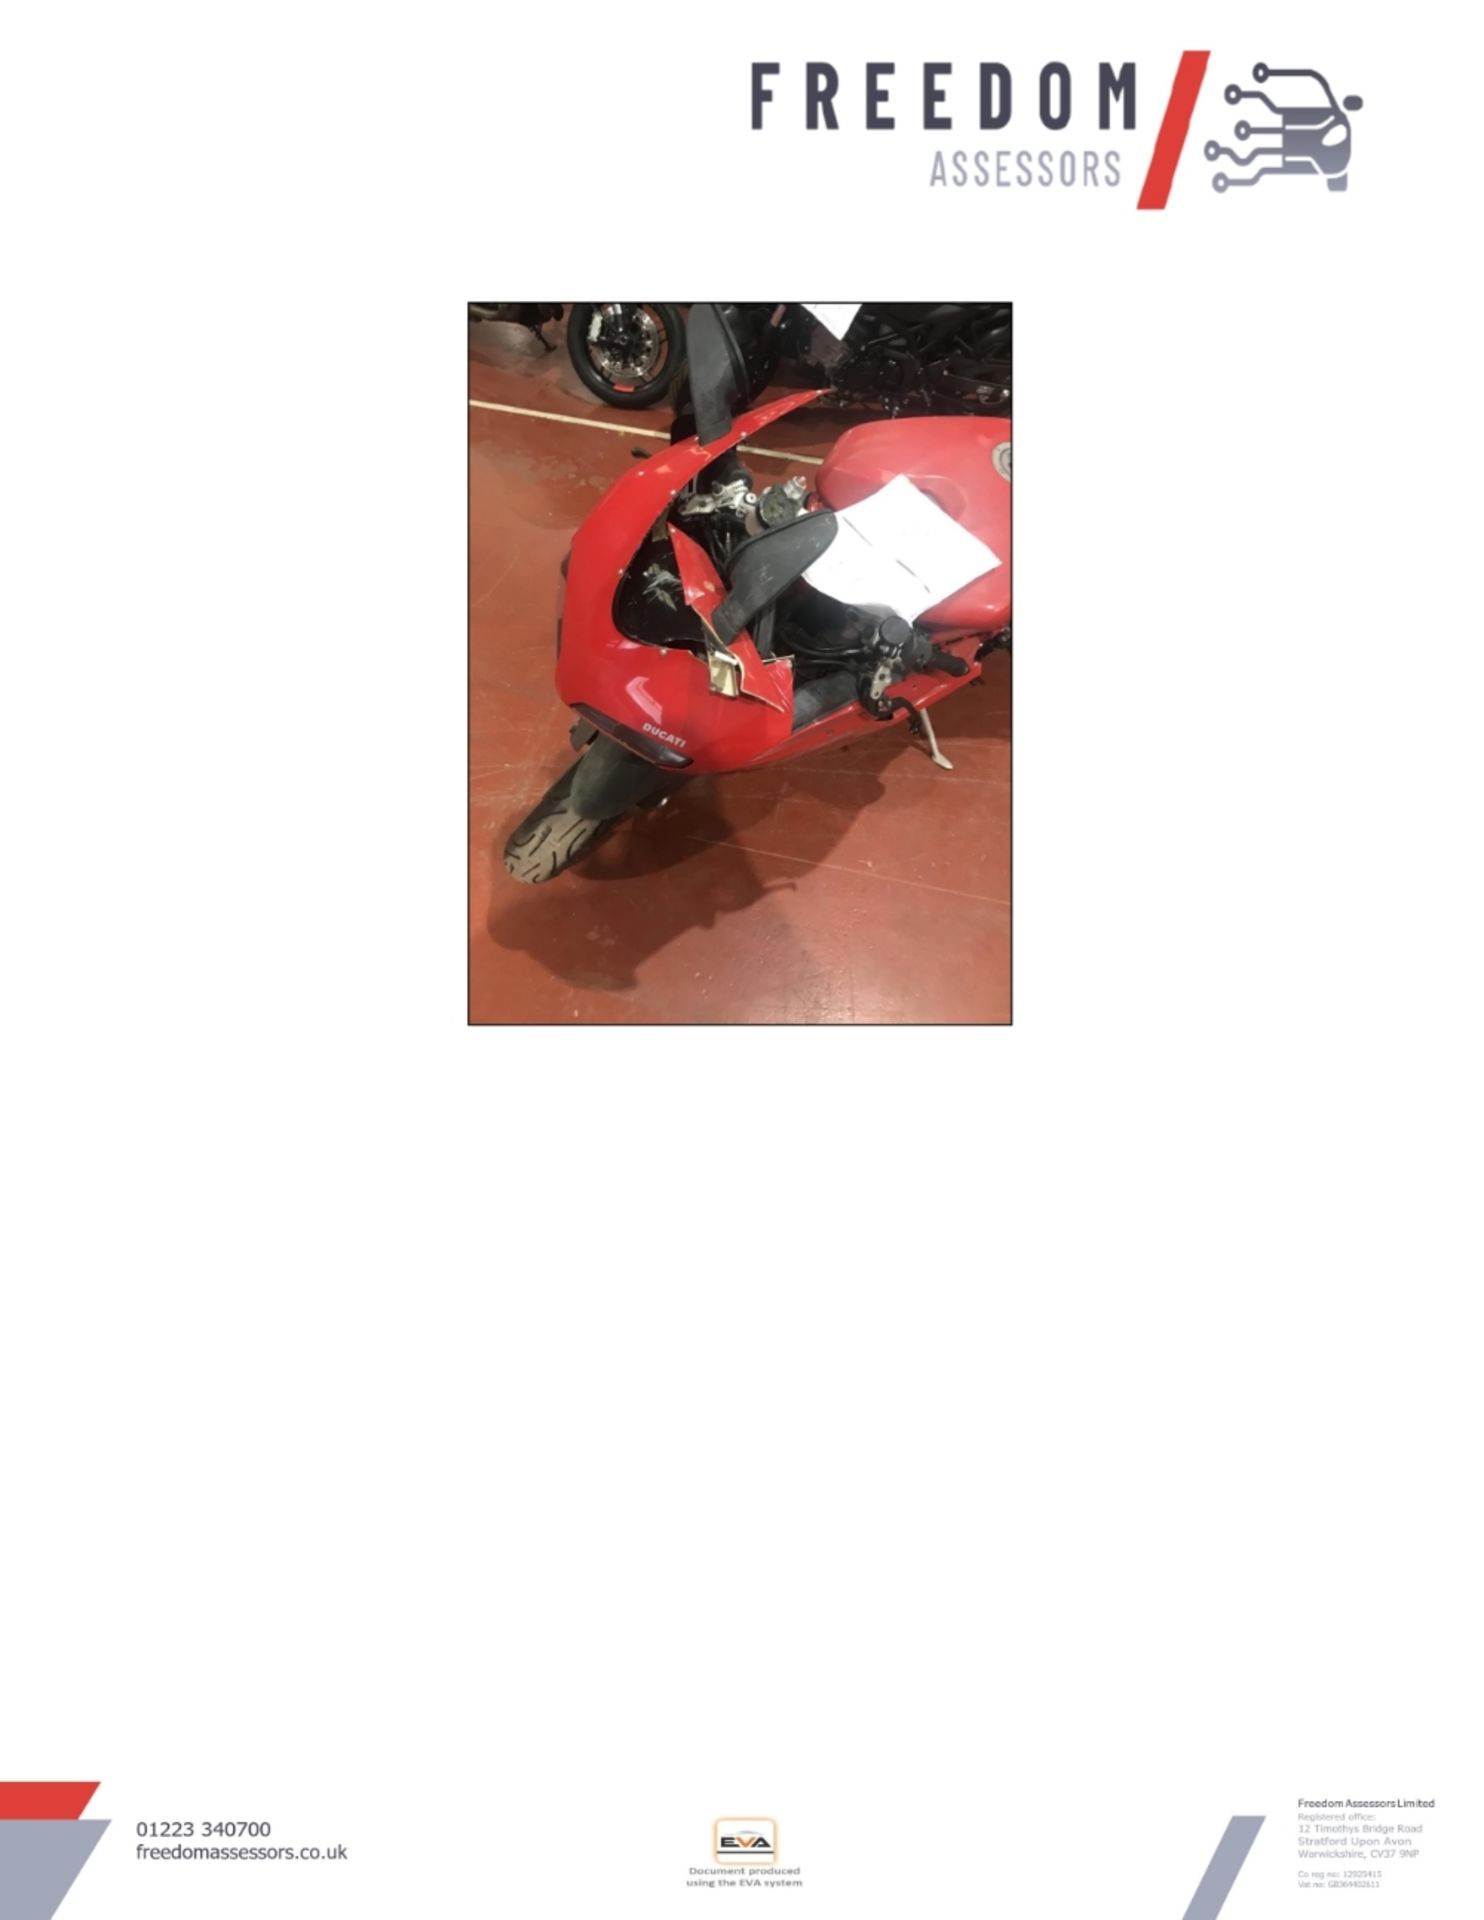 GX10 KTE Ducati 848 Motorcycle - Image 33 of 36